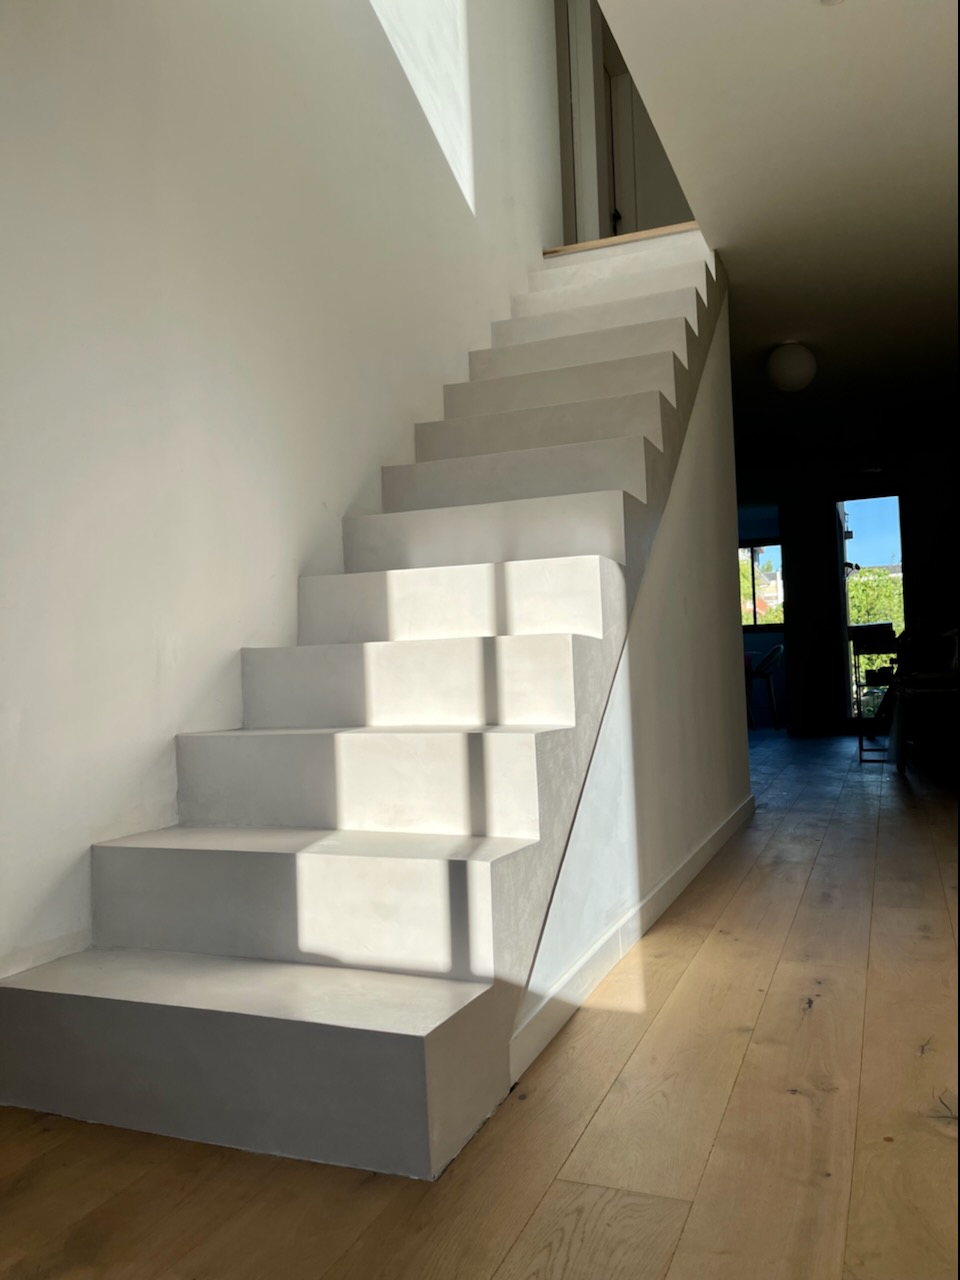 L'escalier en micron béton est un choix esthétique et fonctionnel pour les propriétaires qui cherchent à ajouter une touche moderne et minimaliste à leur intérieur.